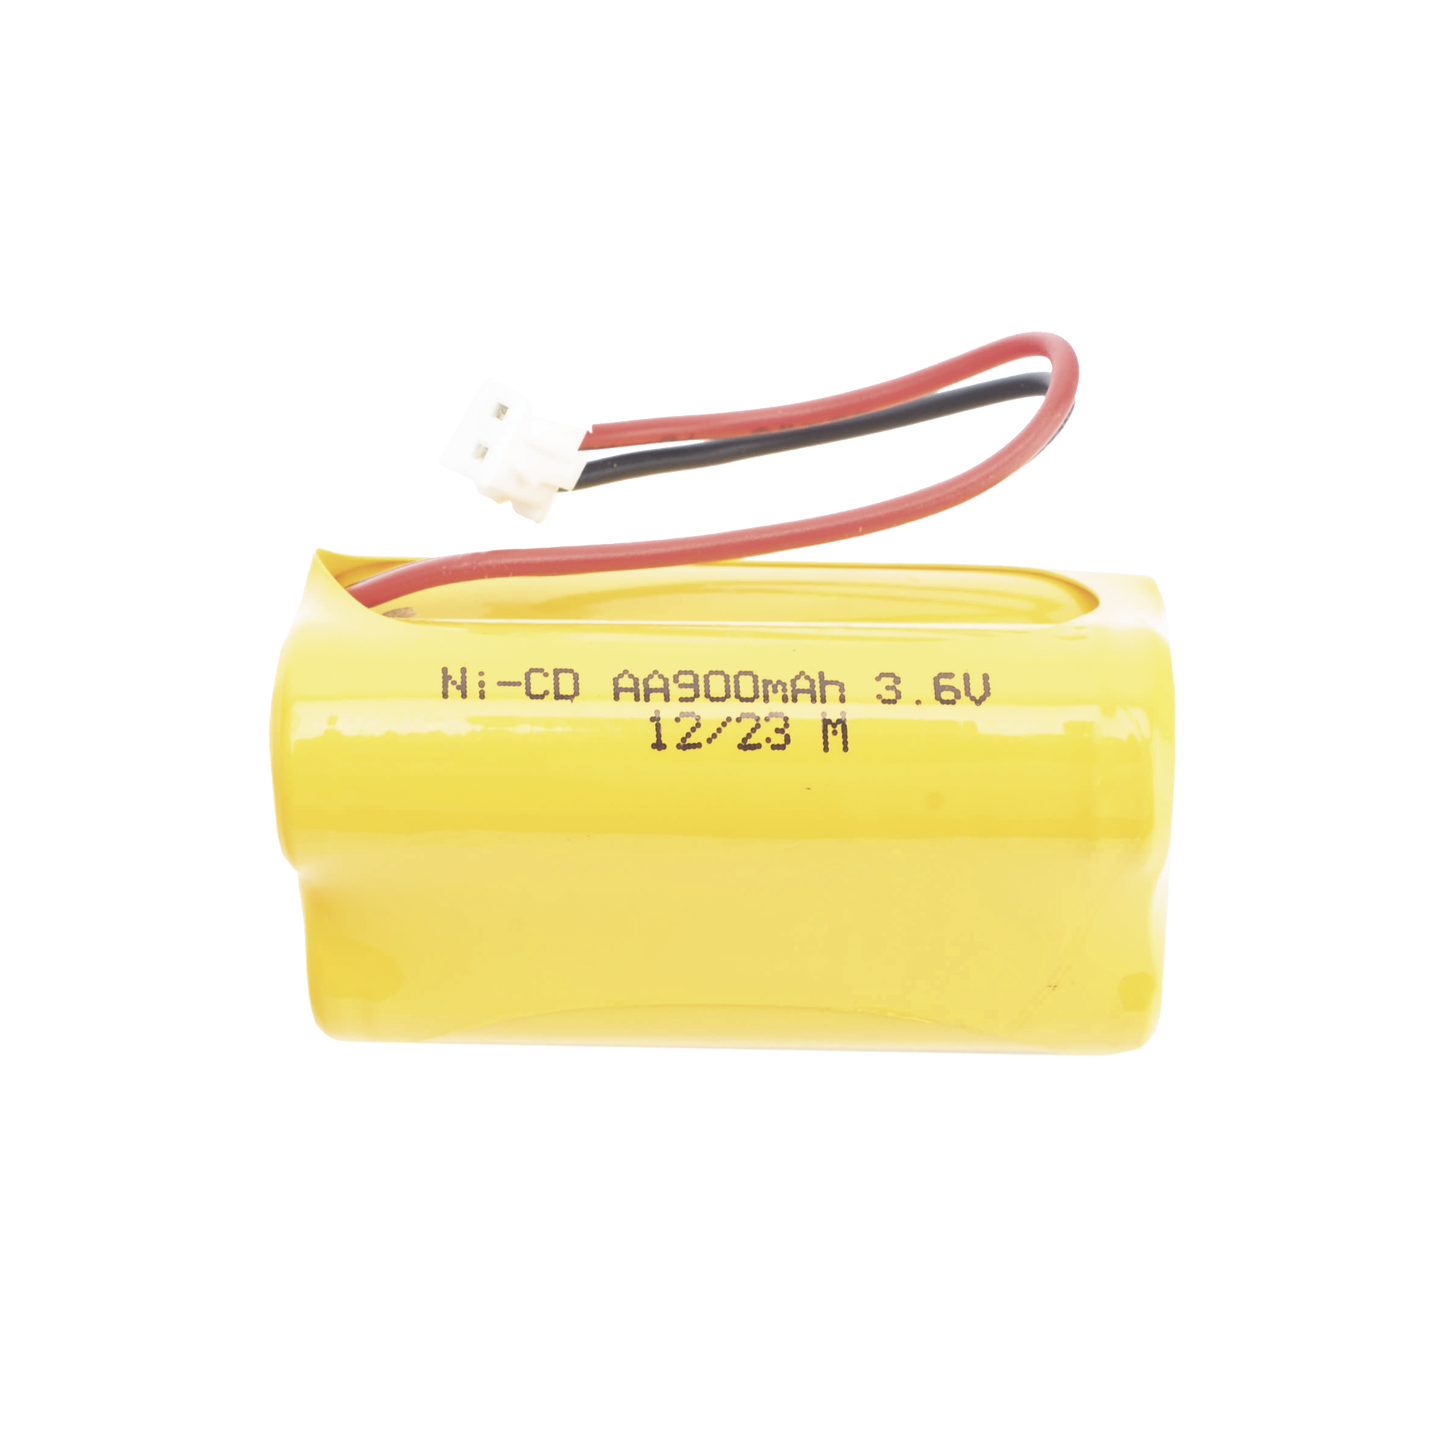 Bateria de 3.6V para Luz de Emergencia SF-KDC860